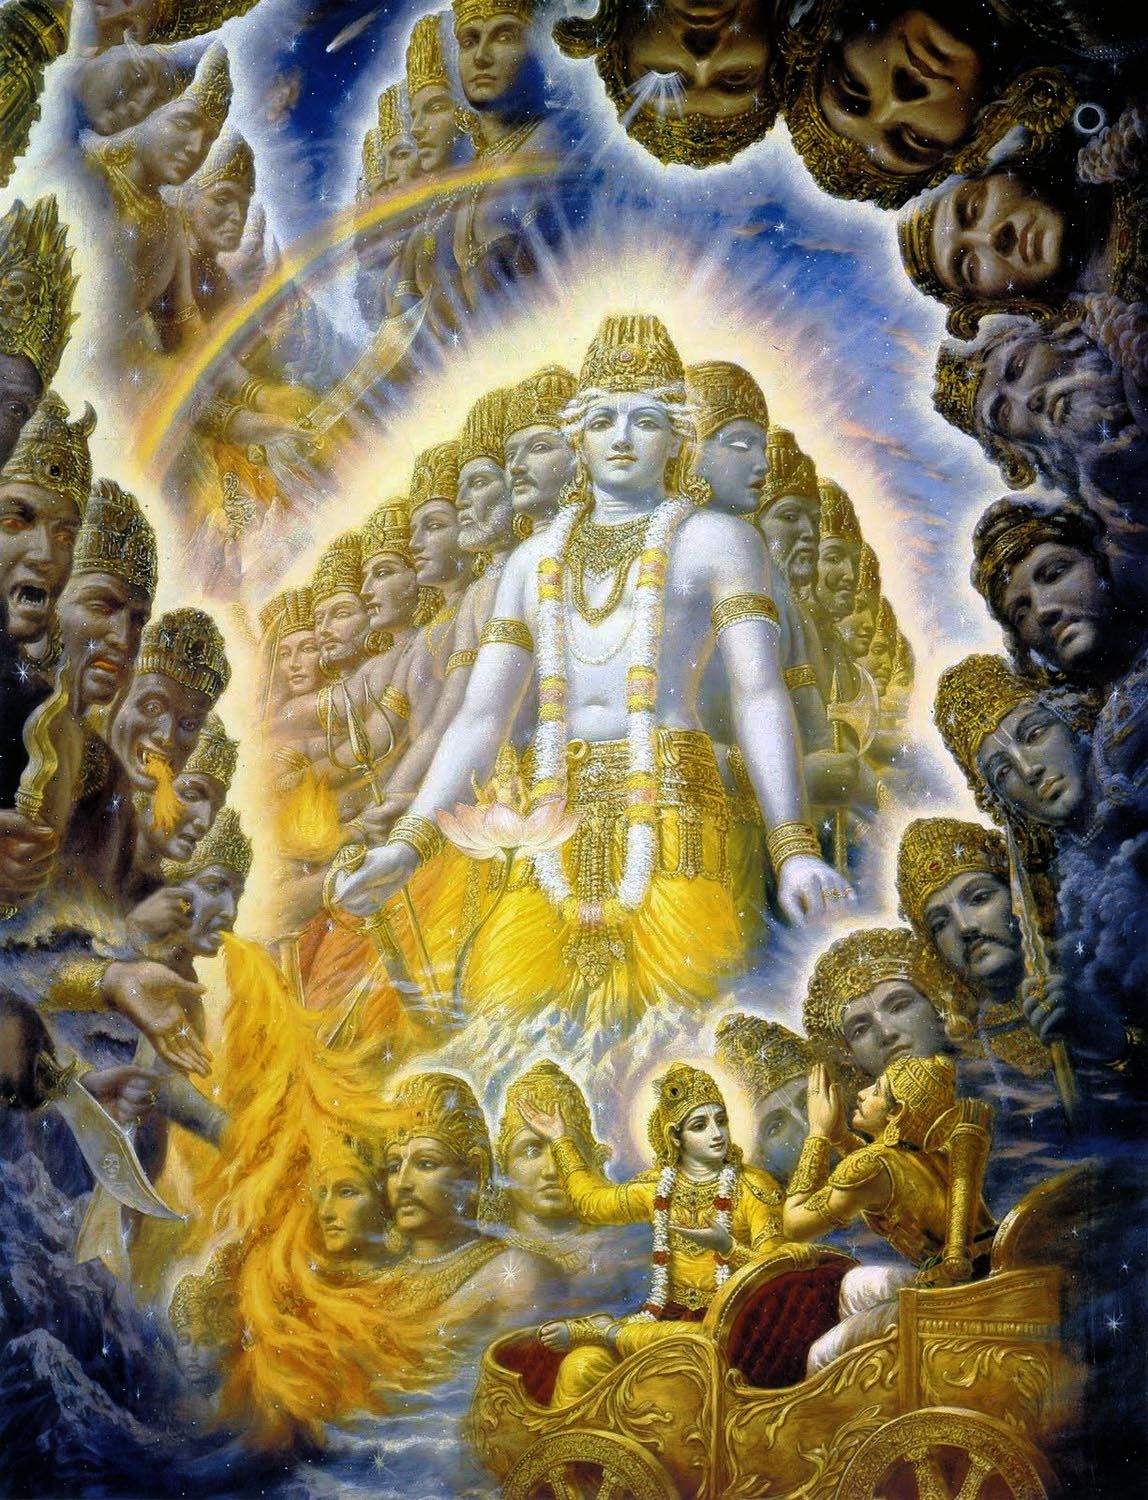 Krishna / Vishnu